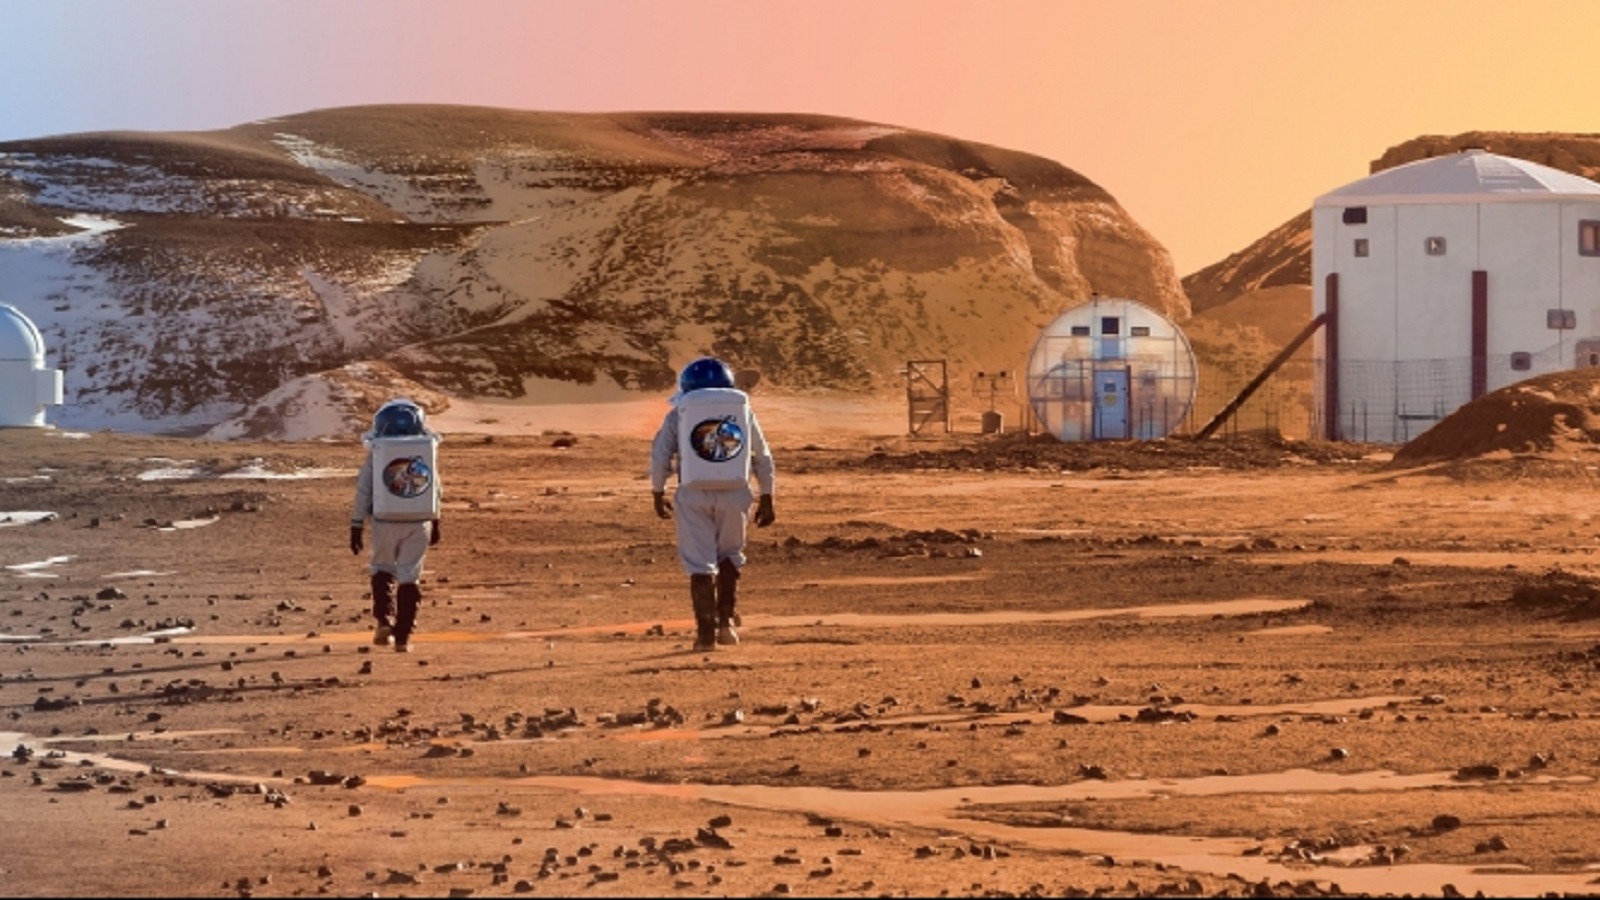 "ناسا" تفتح أبوابها: من يريد زيارة المريخ؟!